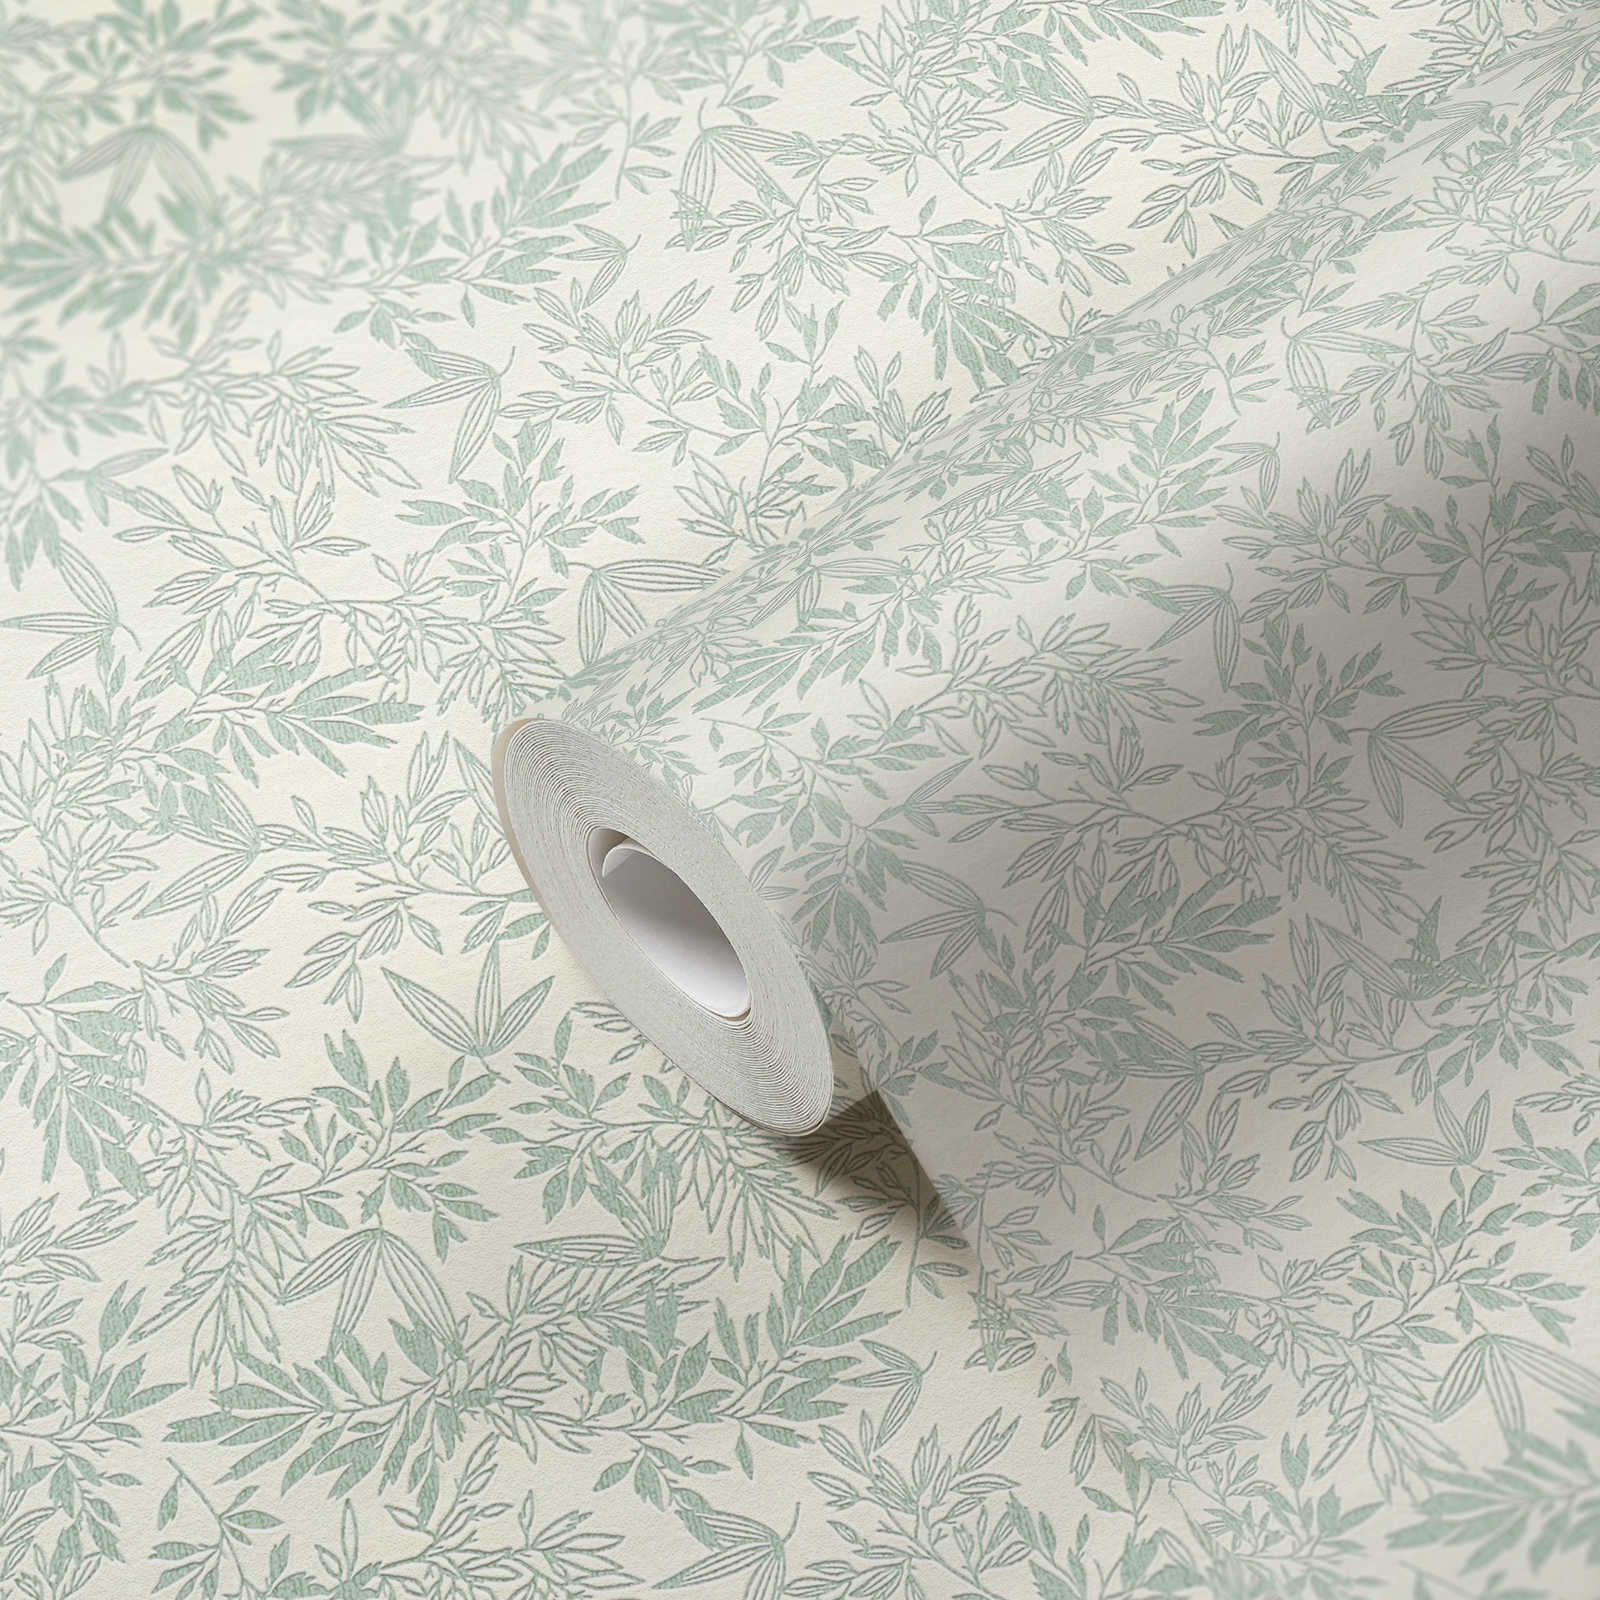             Vliesbehang met groot bladmotief mat - groen, wit
        